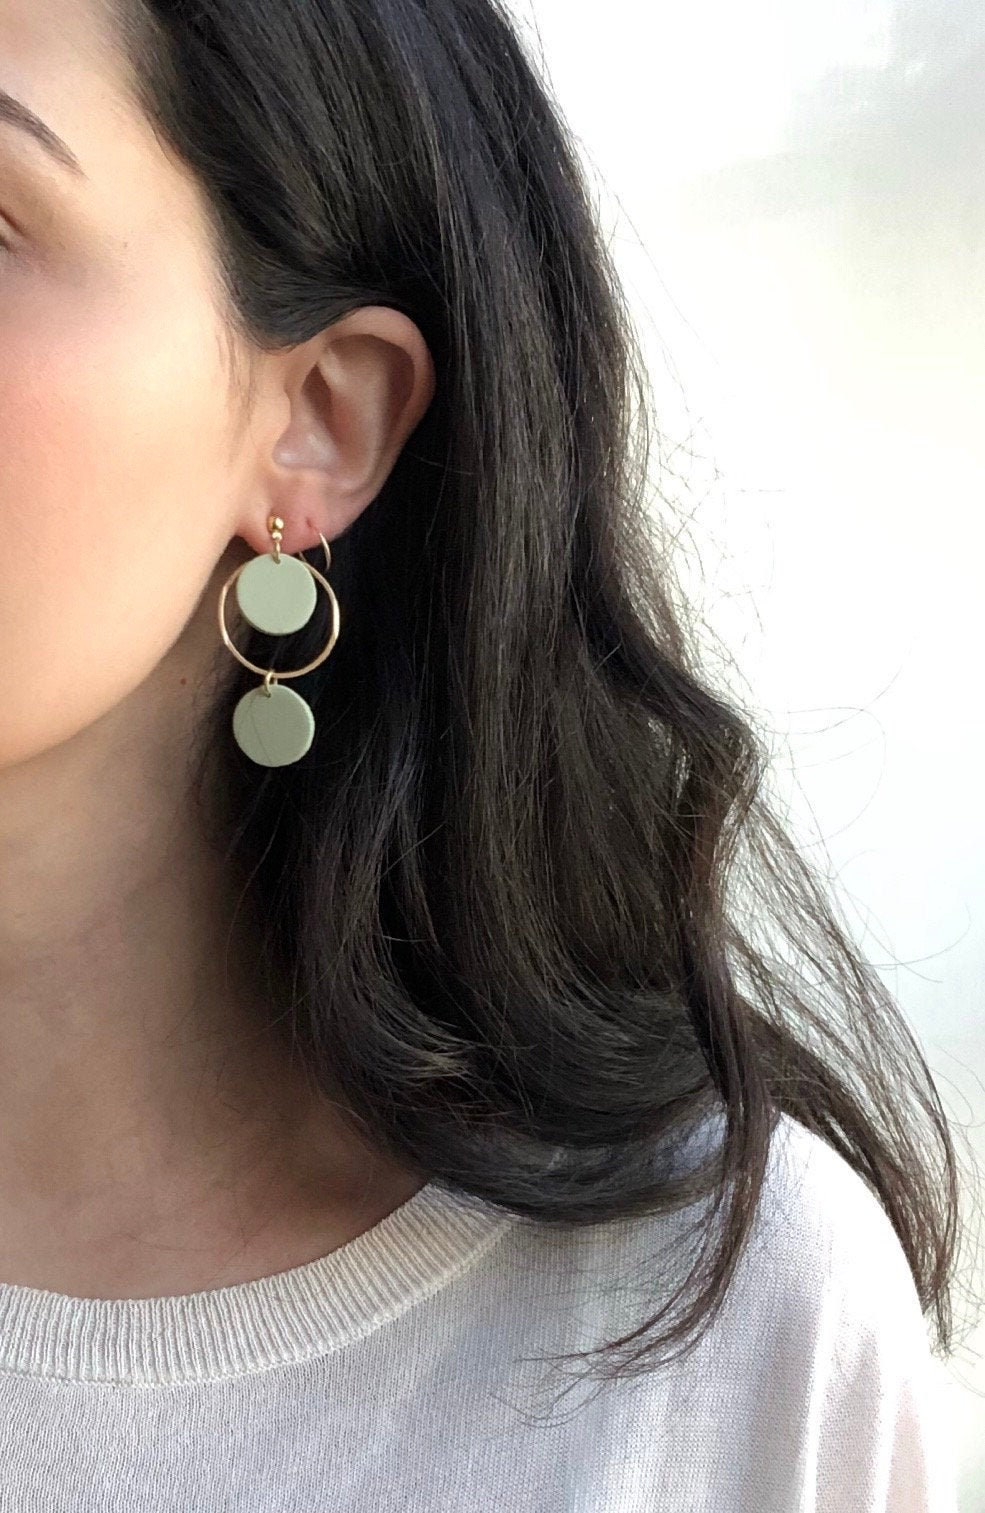 Dainty Hoop Earrings Cute Earrings Sage Green Gold Hoop | Etsy